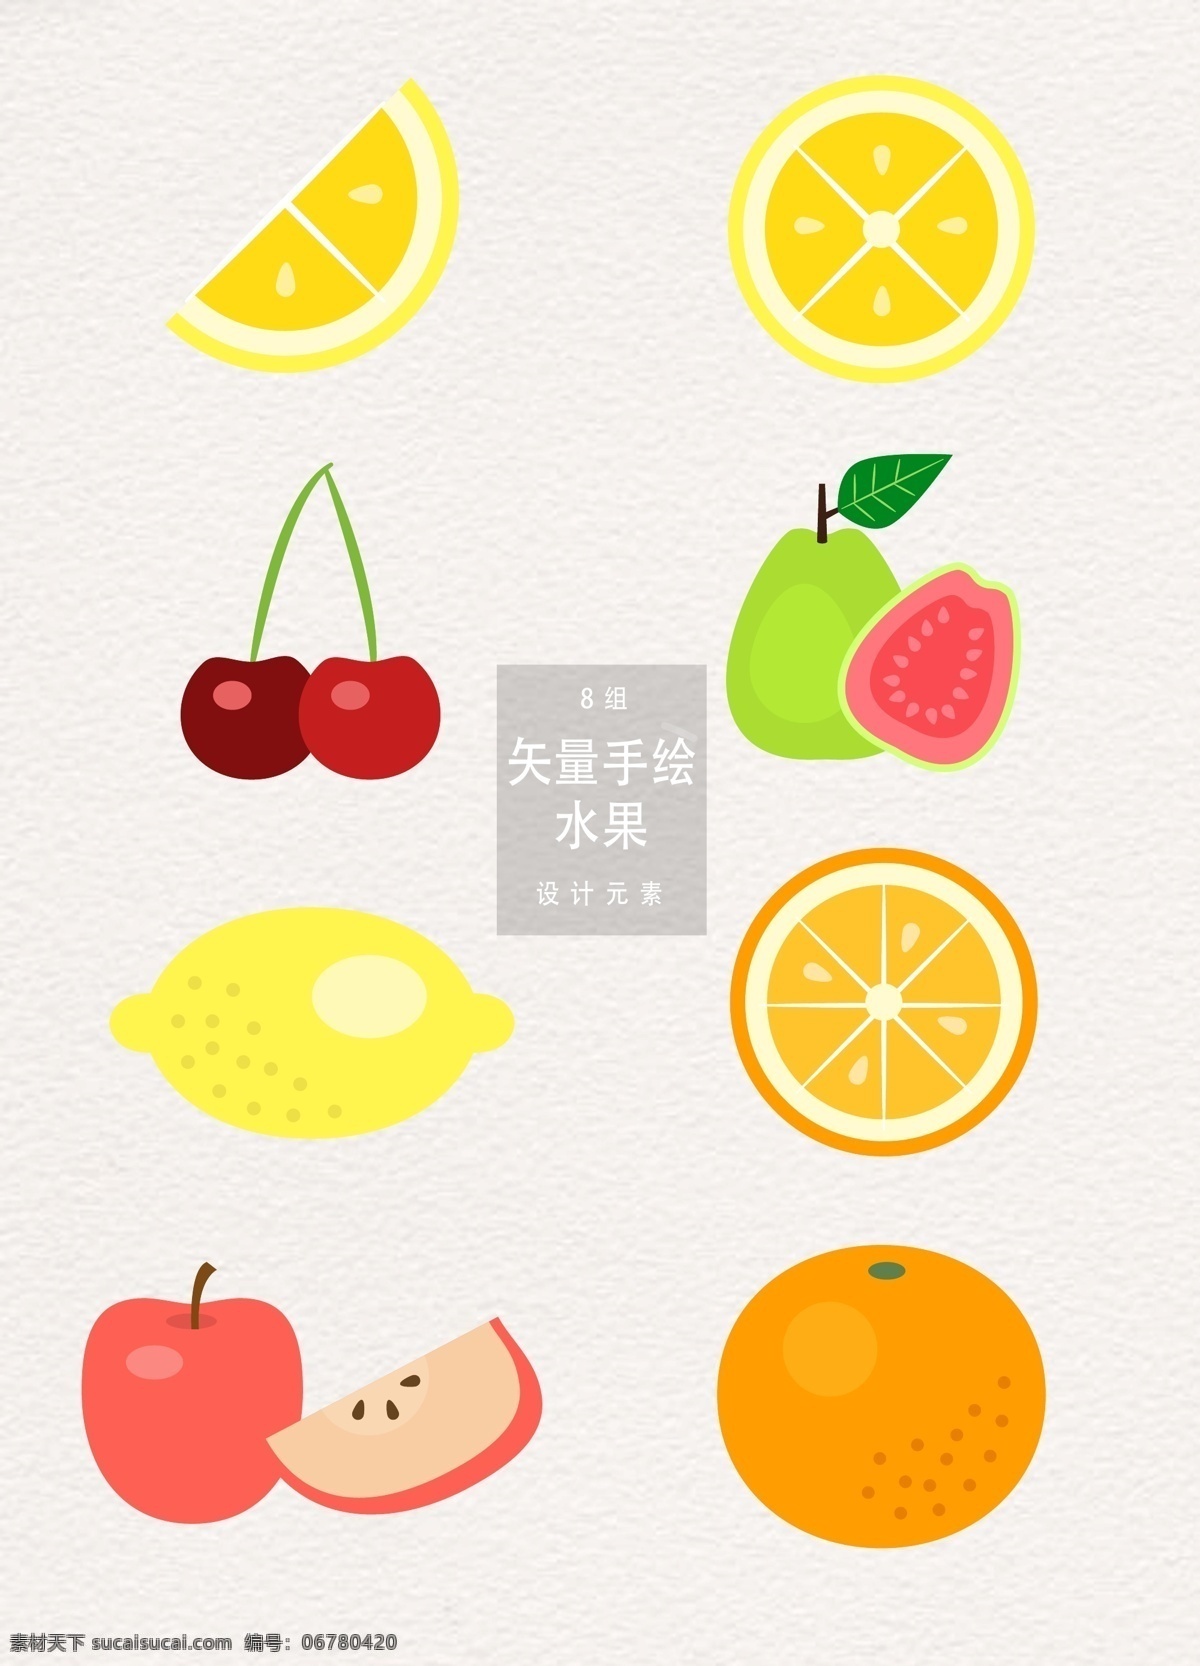 扁平化 矢量 水果 夏季 植物 柠檬 苹果 夏天 西瓜 元素 手绘水果 食物 扁平化水果 樱桃 橙子